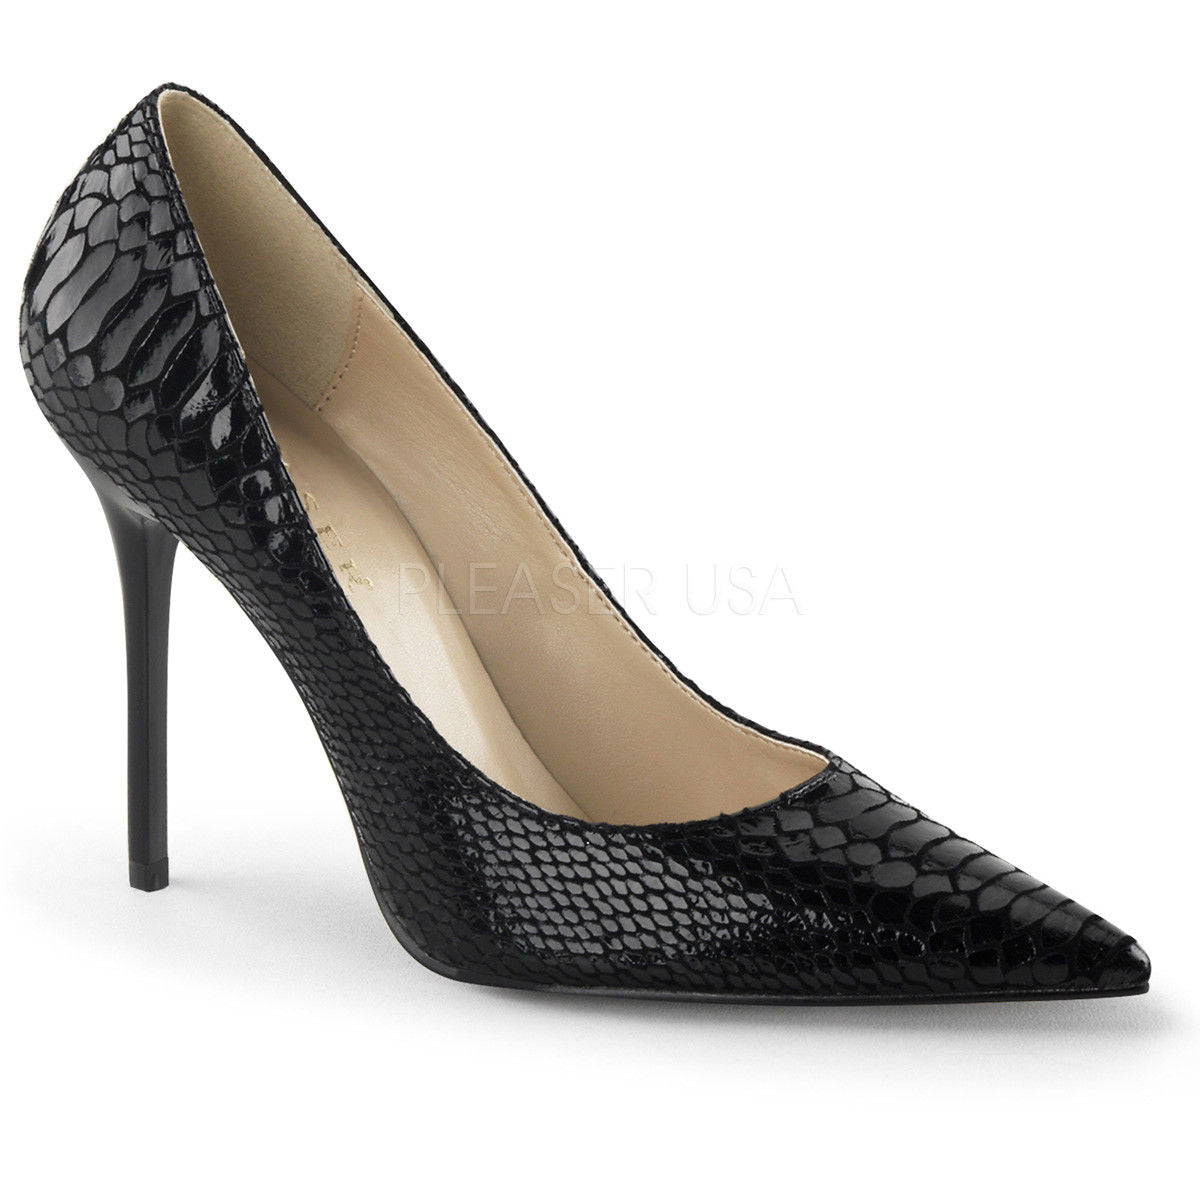 PLEASER Classique-20SP Black Snake Print Leather 4" Heels Pumps Drag Womens 4-15 - A Shoe Addiction